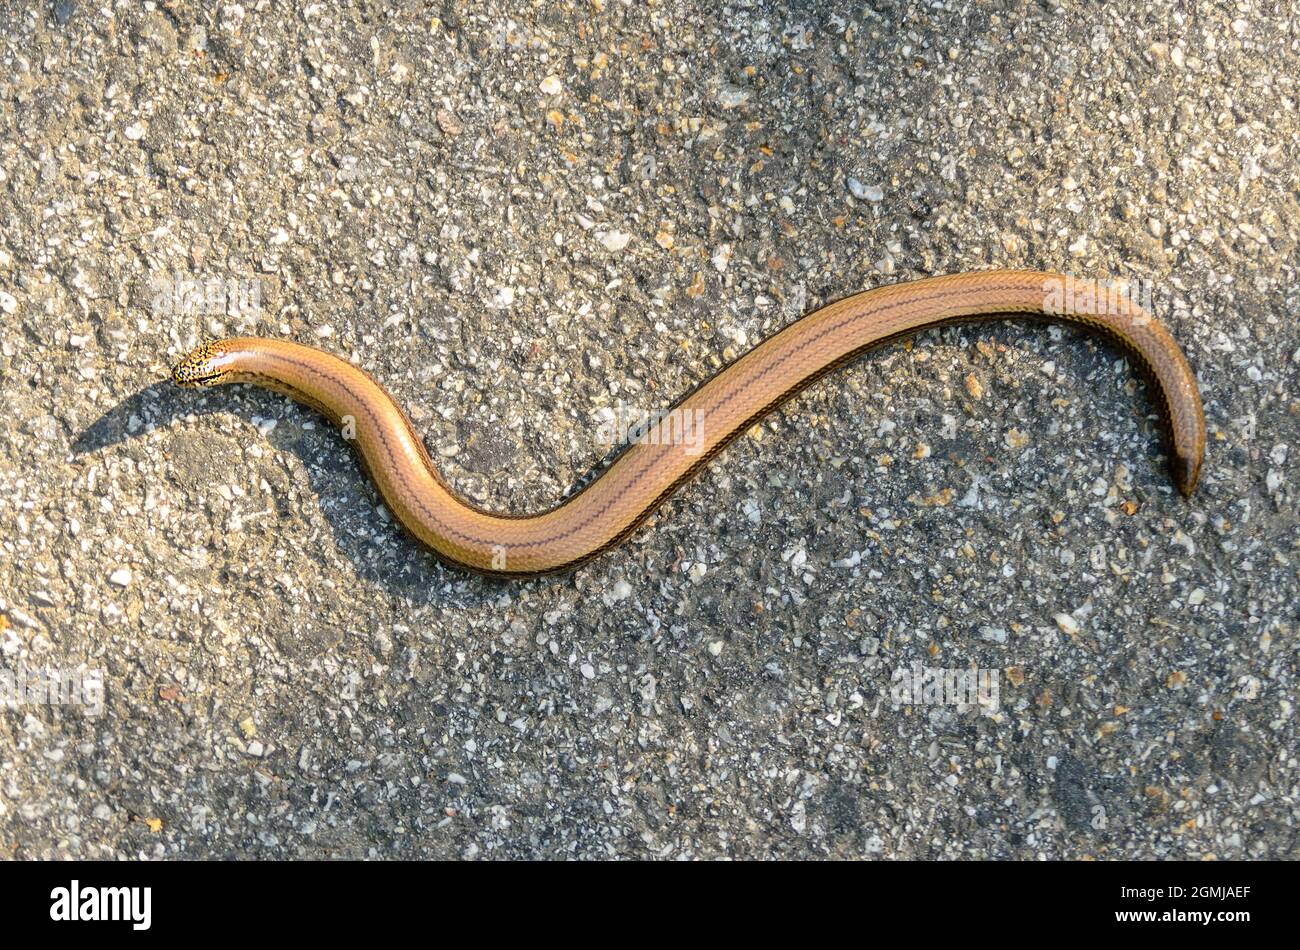 Snake wird auch Kupferschlange genannt, obwohl es sich um eine knochenlose Eidechse handelt. Stockfoto